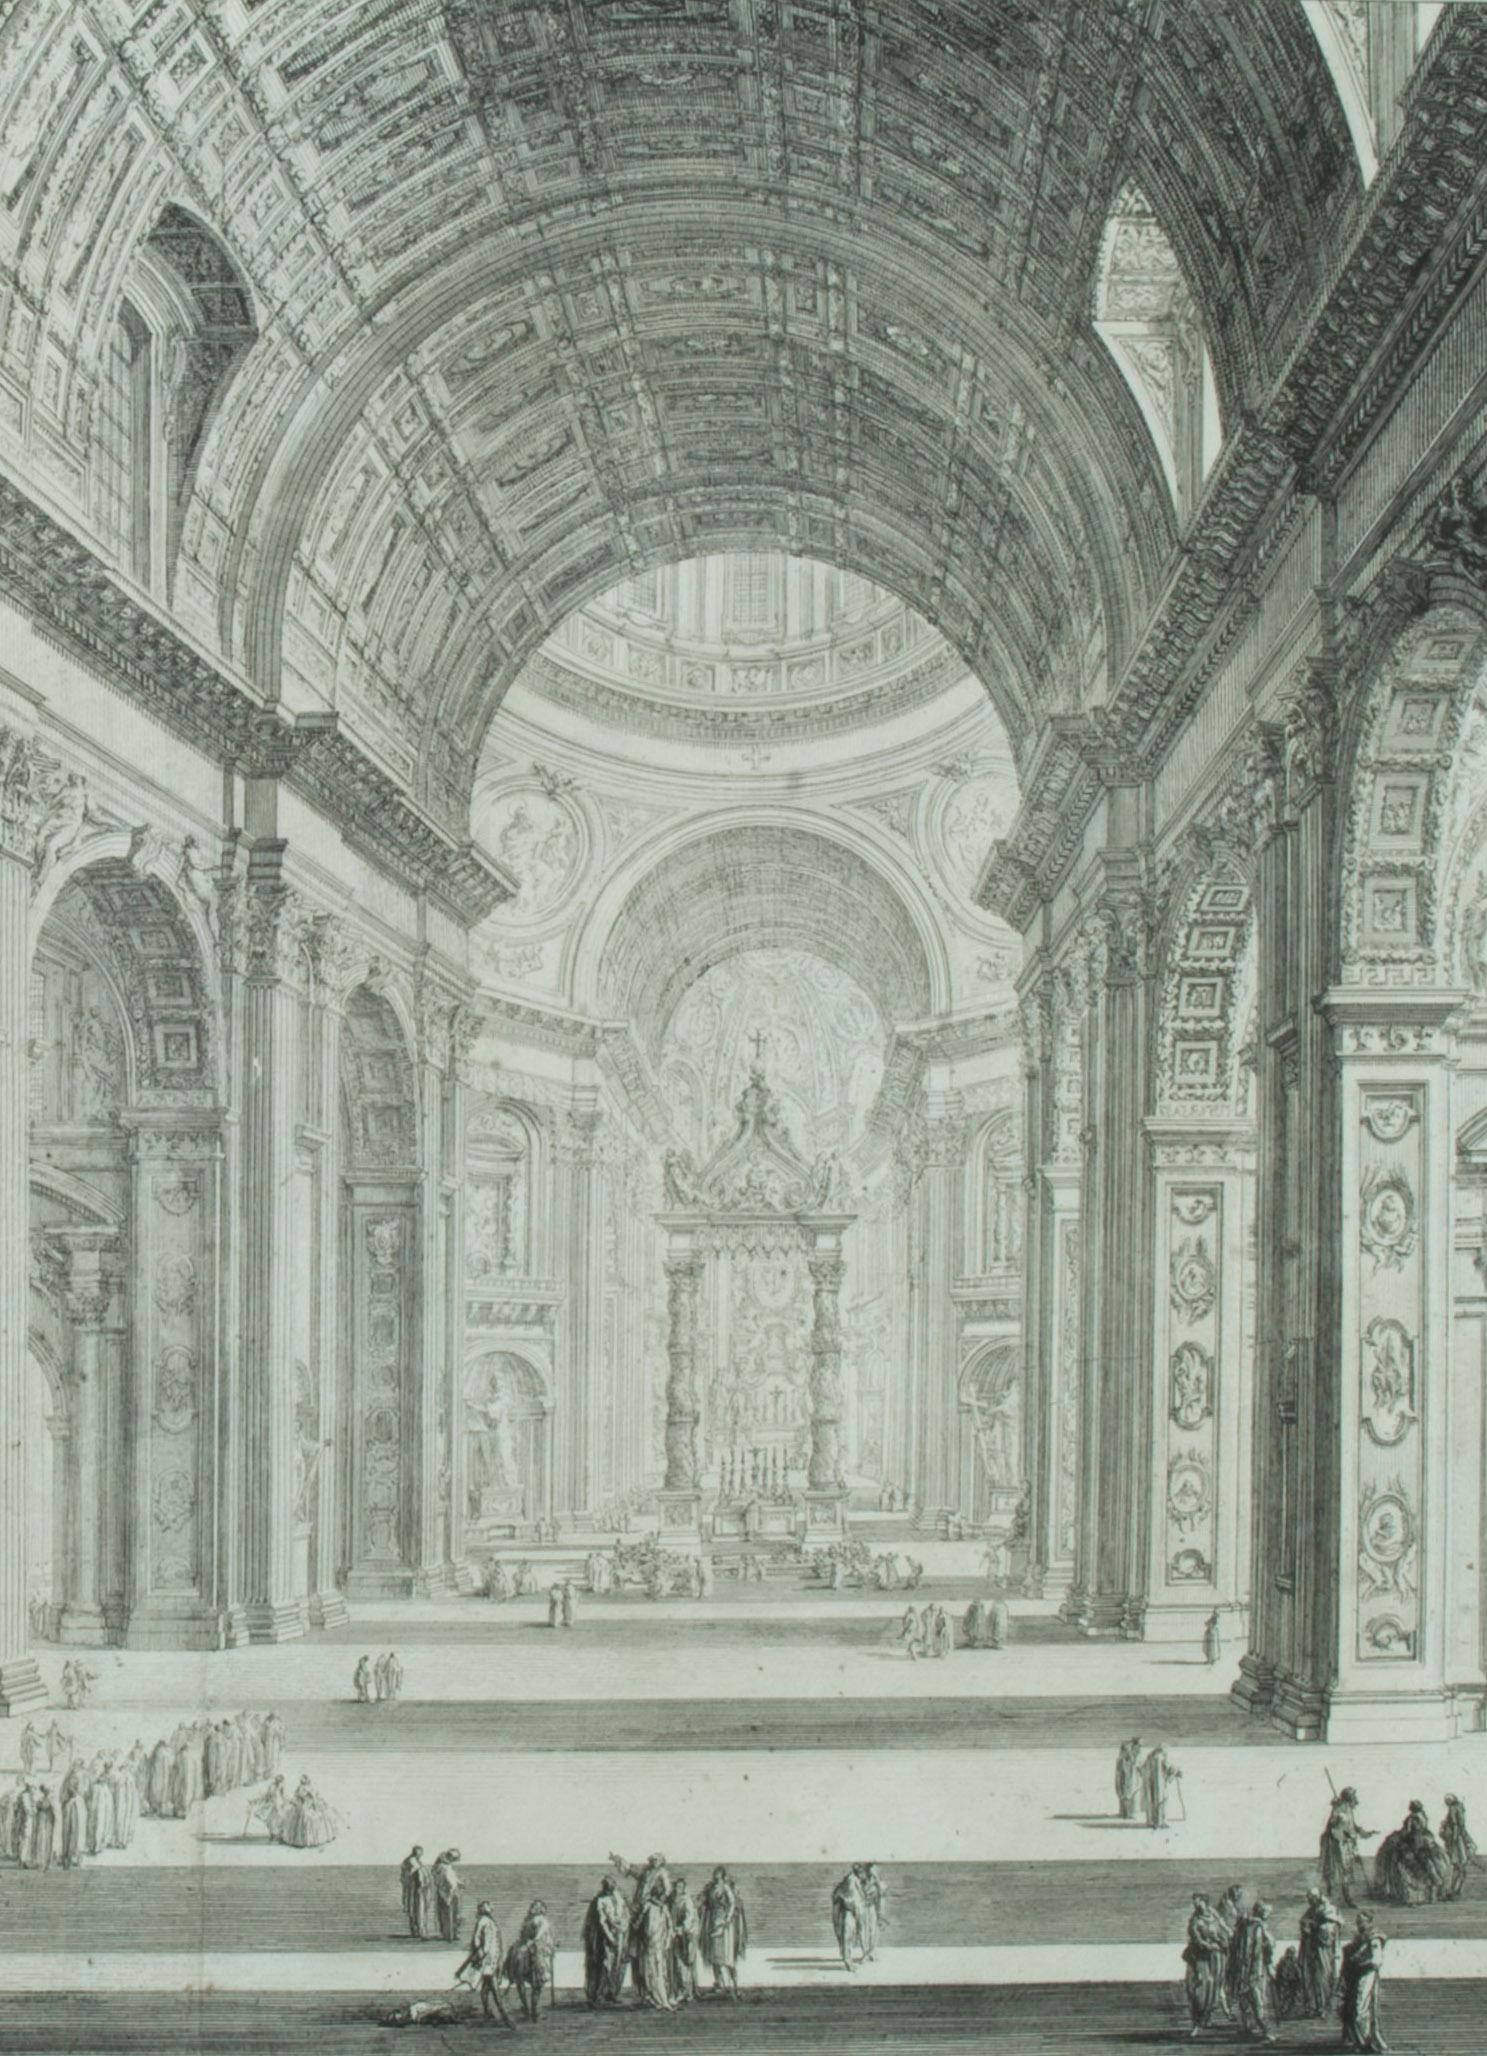 Intérieur de St. Peters avec la Nef                       - Print de Giovanni Battista Piranesi